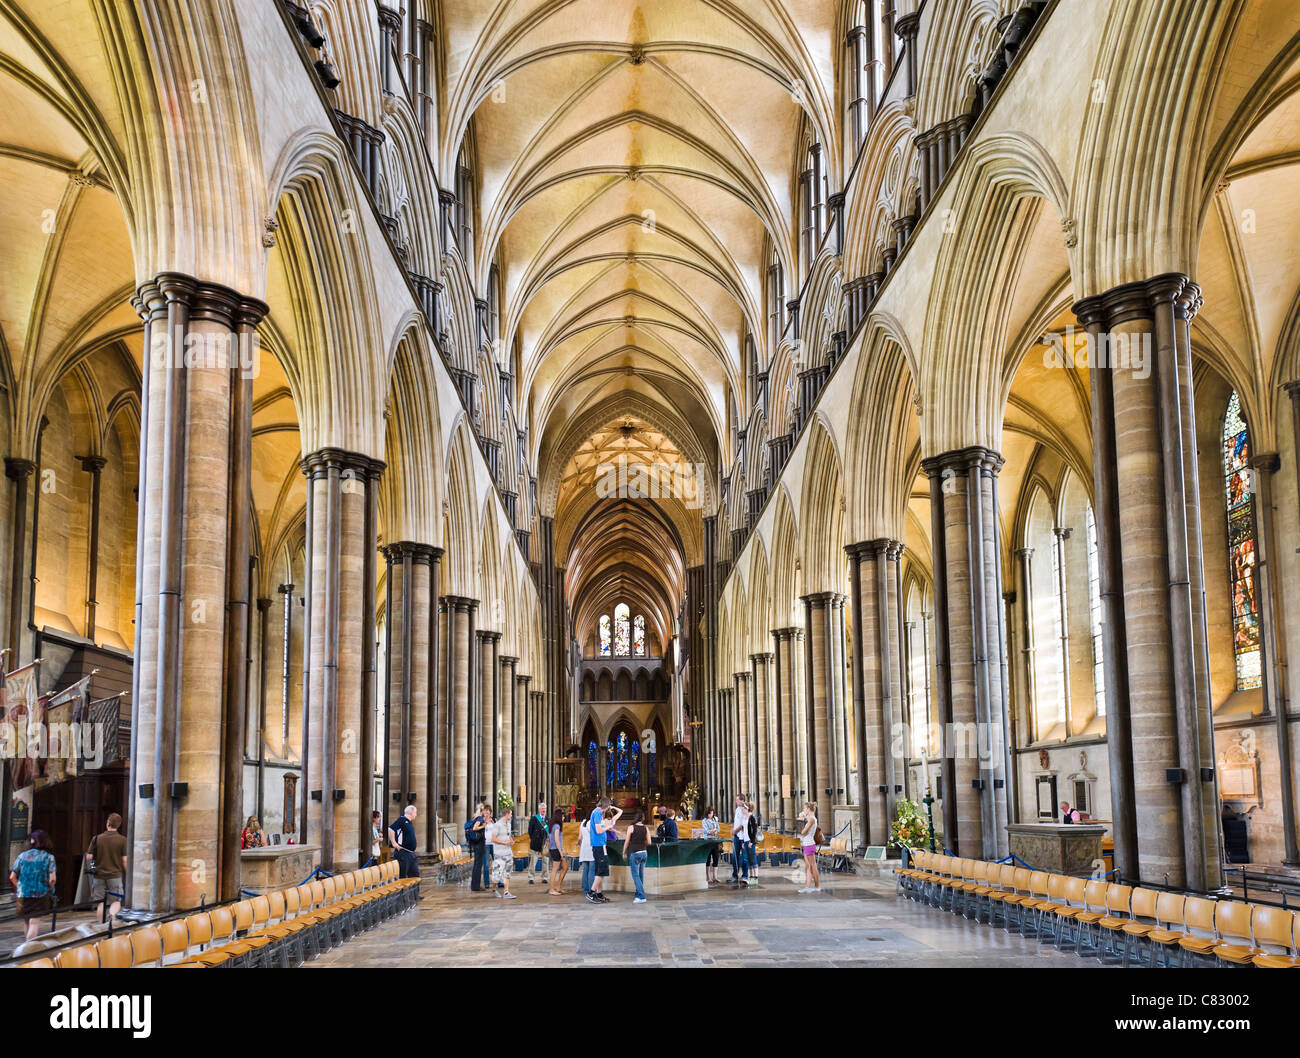 Nave of Salisbury Cathedral, Salisbury, Wiltshire, England, UK Stock Photo